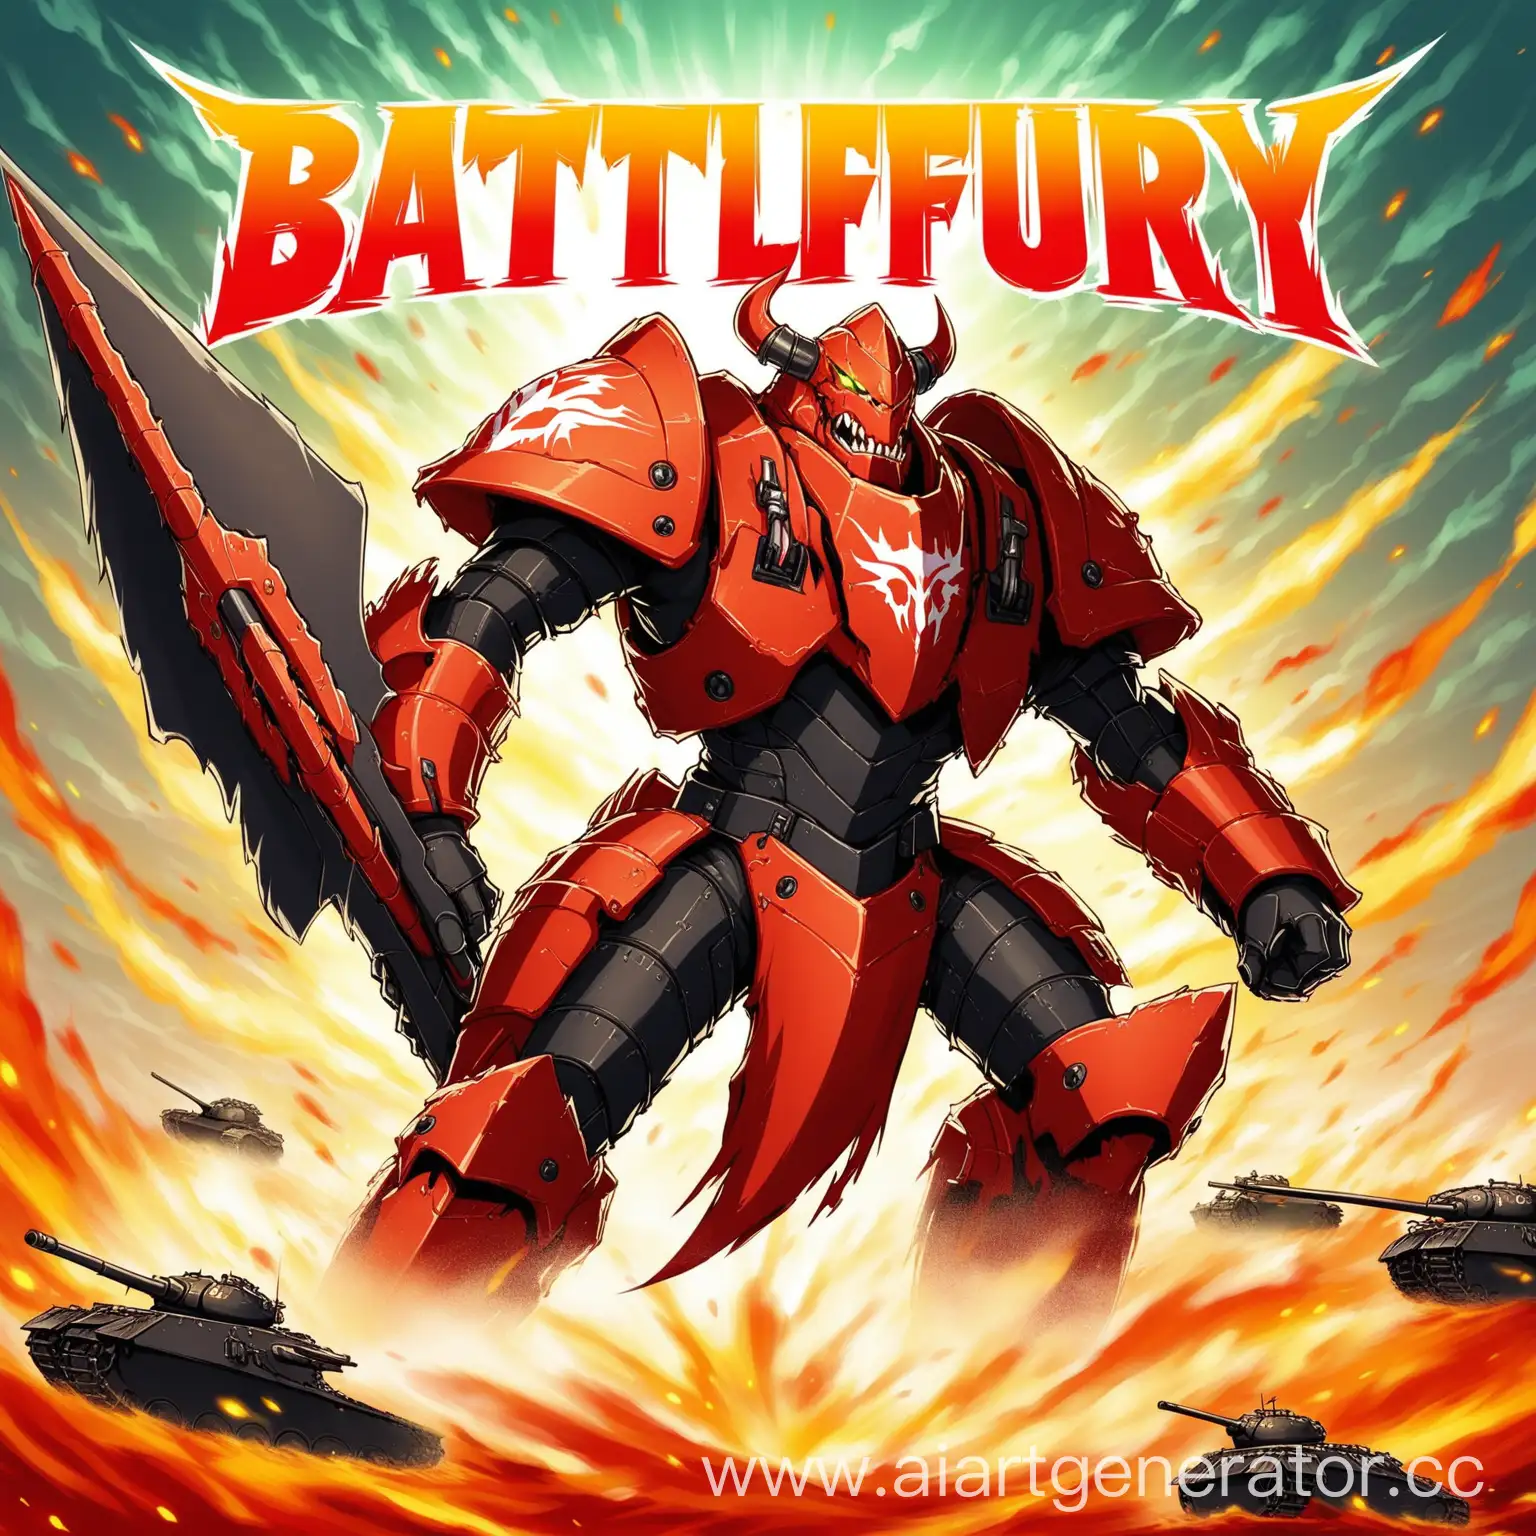 Warrior-Wielding-Battle-Fury-Axe-in-Fiery-Clash